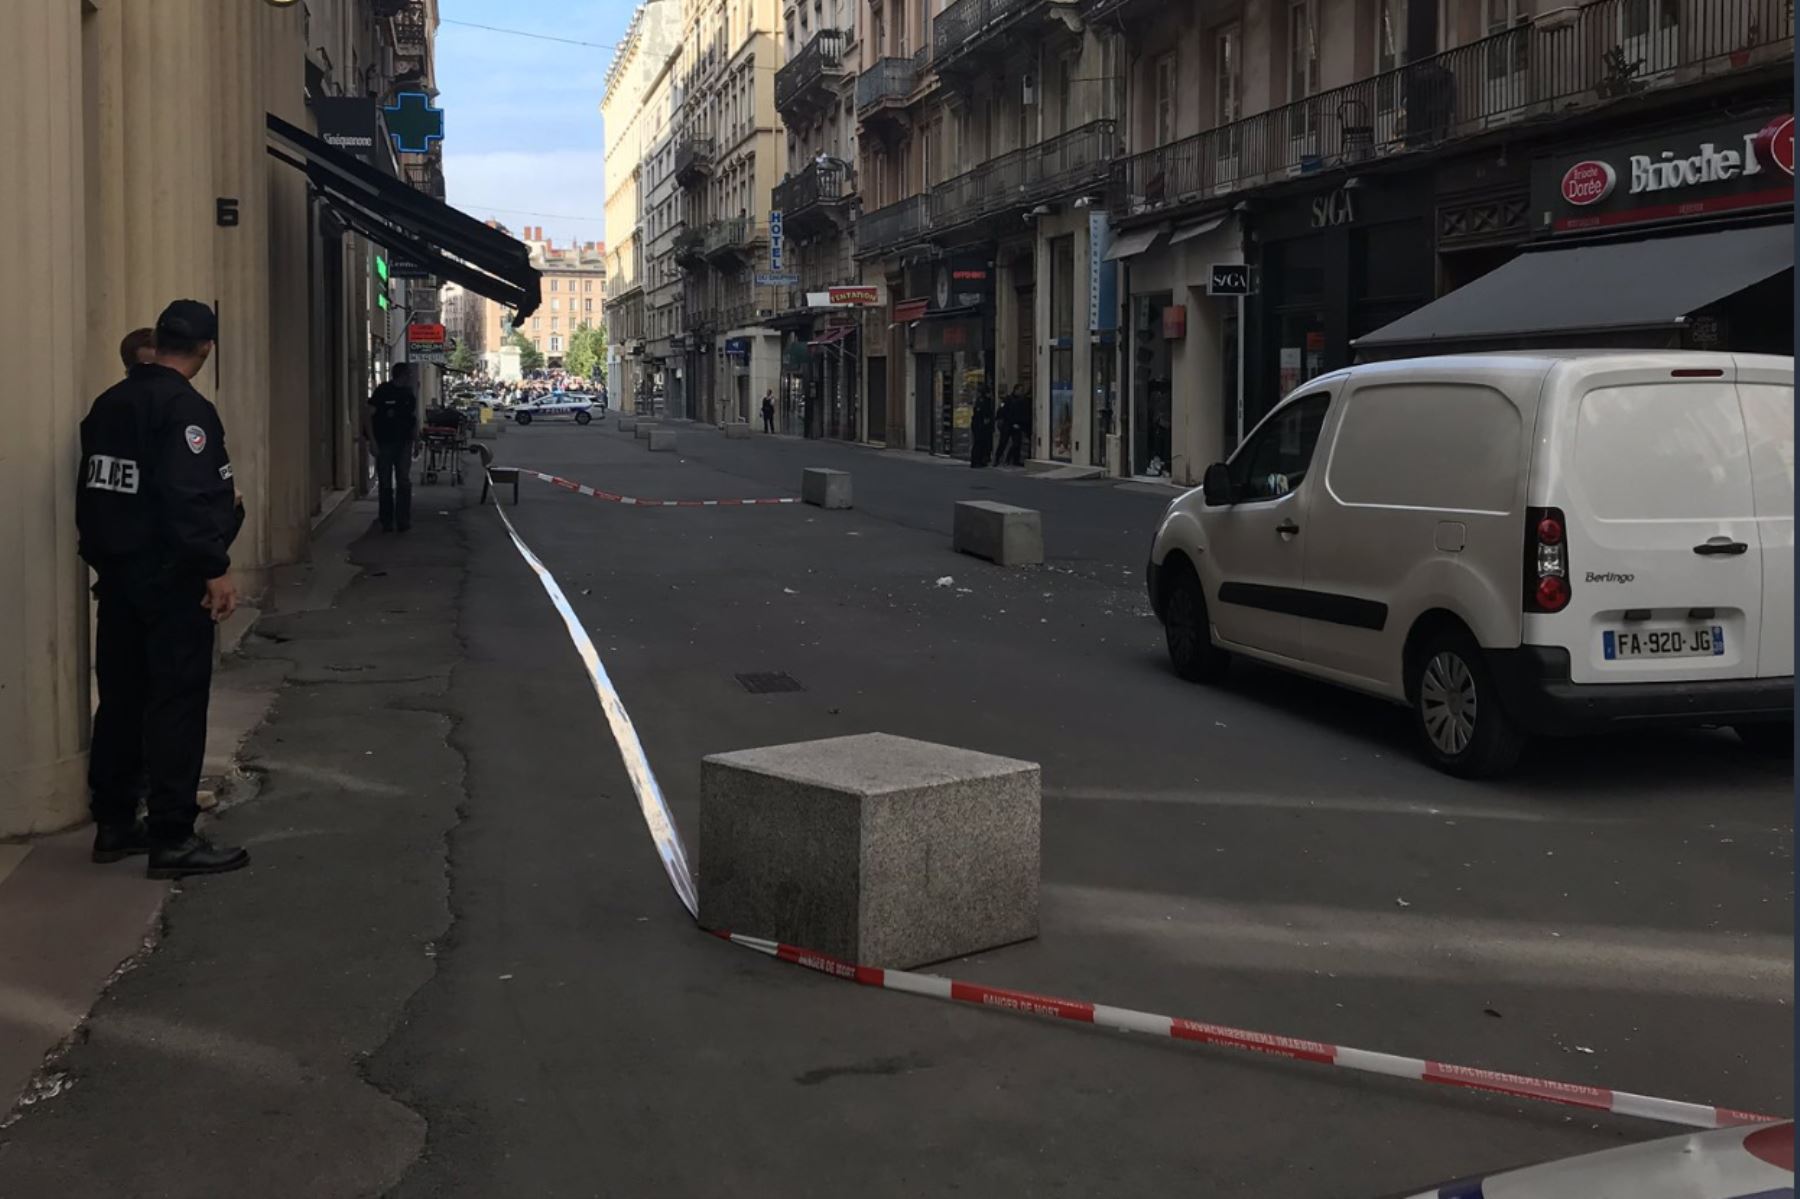 Una explosión ha causado al menos ocho
heridos leves junto a una panadería en el centro de Lyon, Francia. Foto: Twitter/@prefetrhone